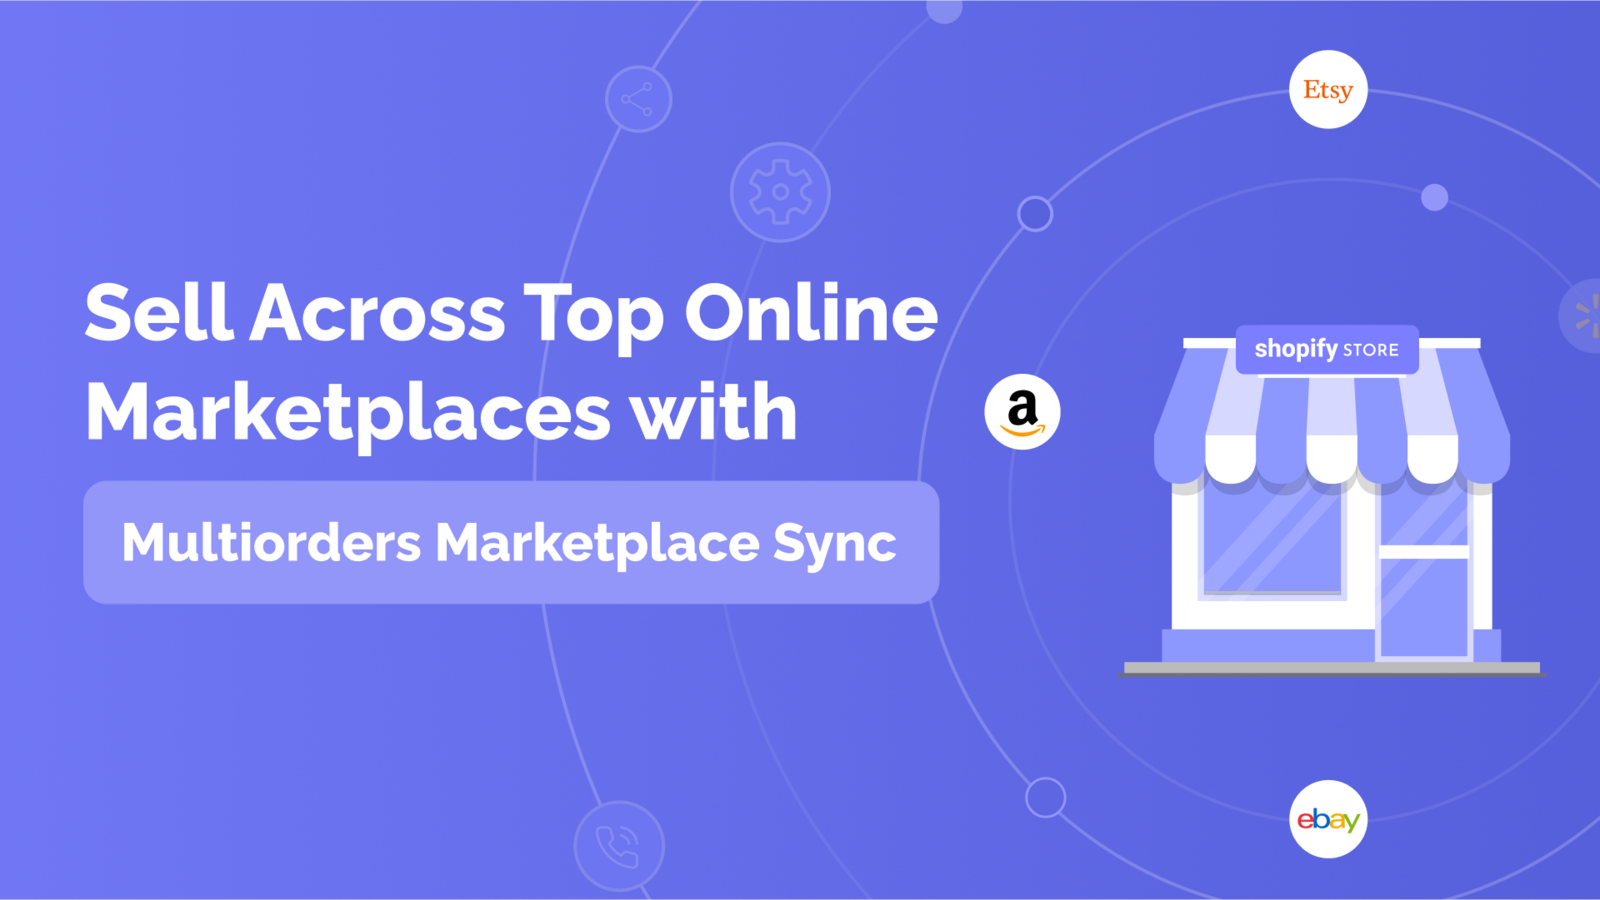 Verkaufen Sie auf den Top-Marktplätzen mit Multiorders Marketplace Sync